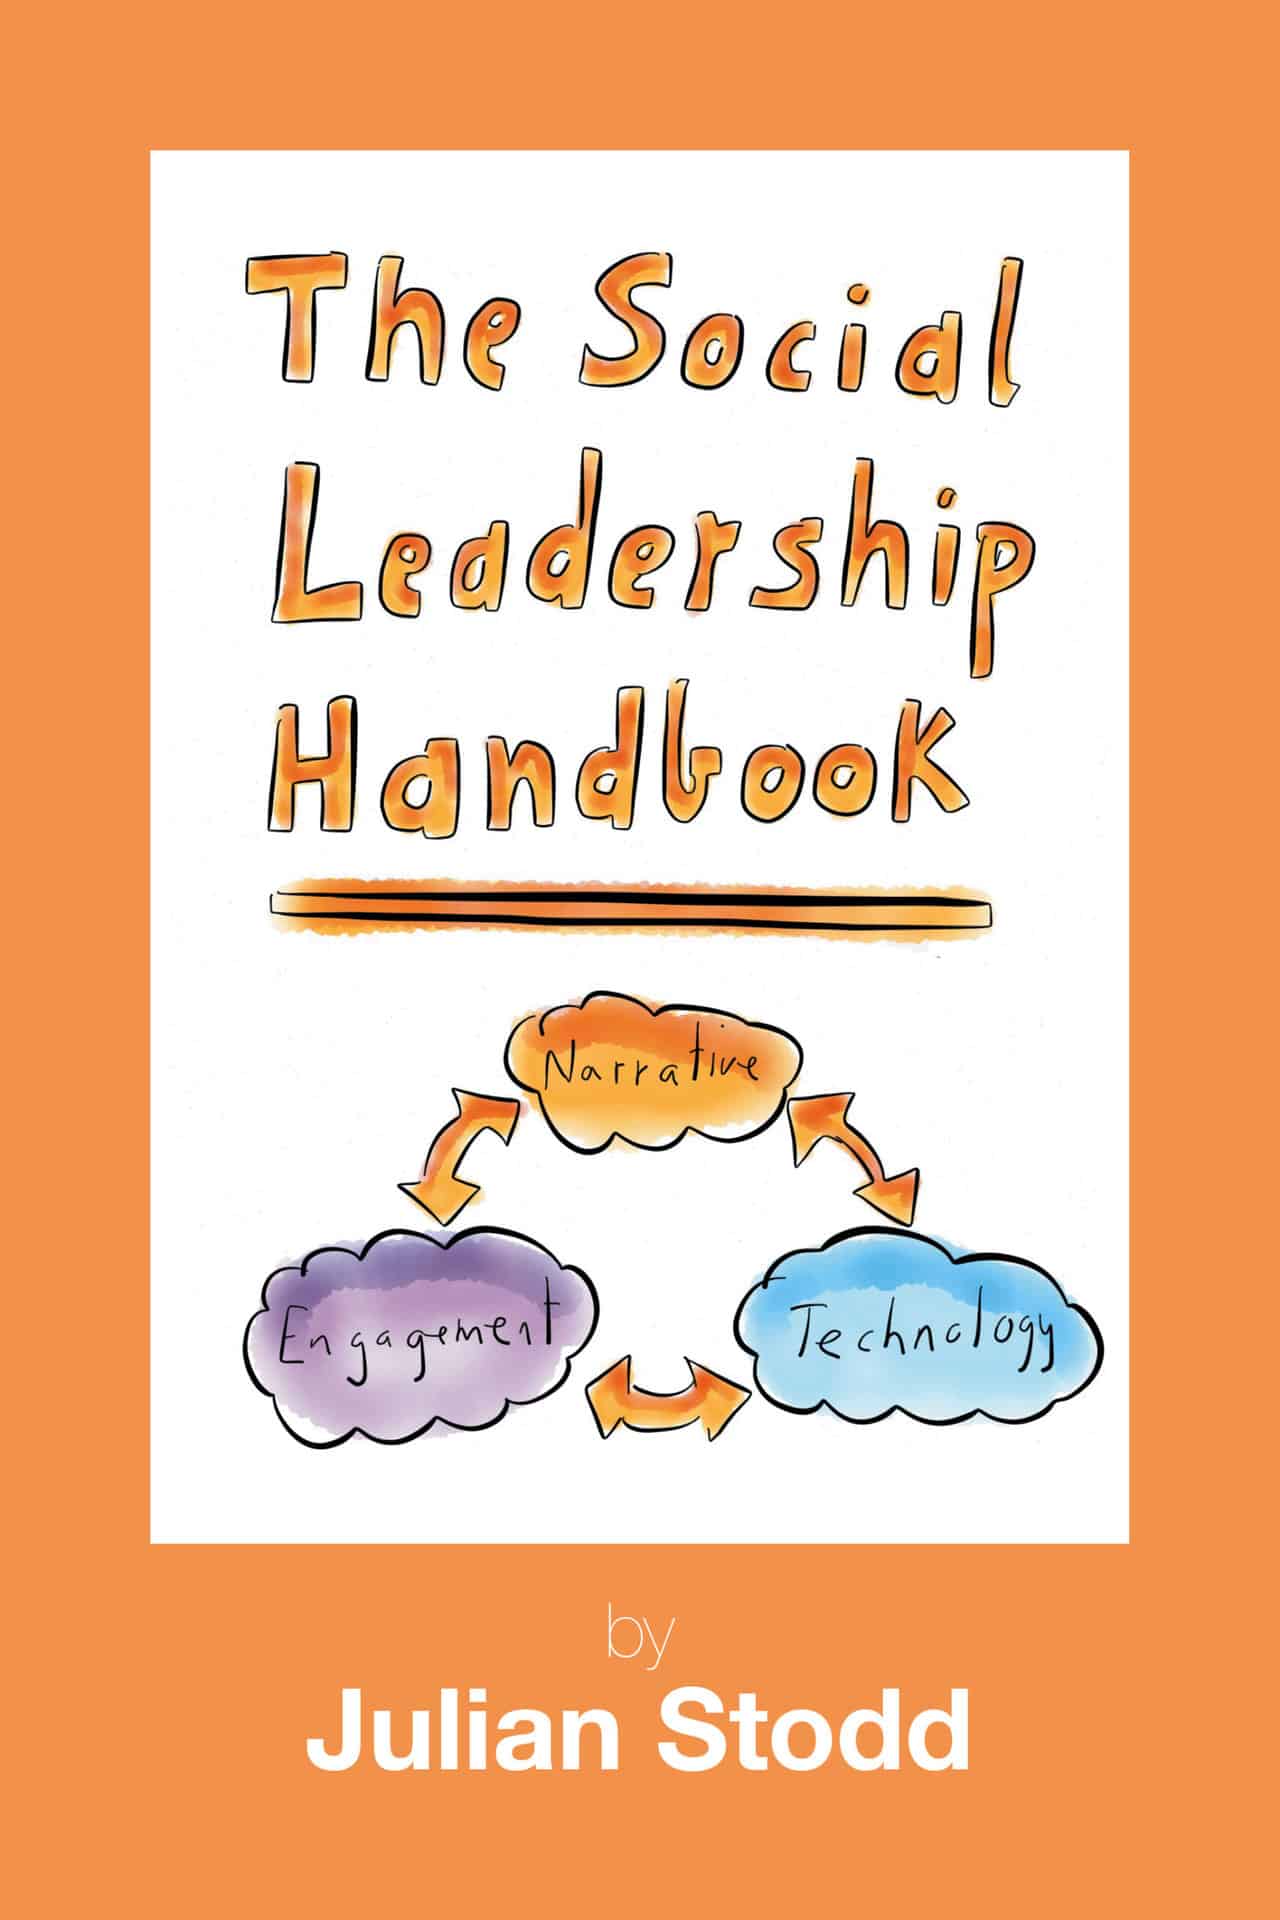 The Social Leadership Handbook via Julian Stodd